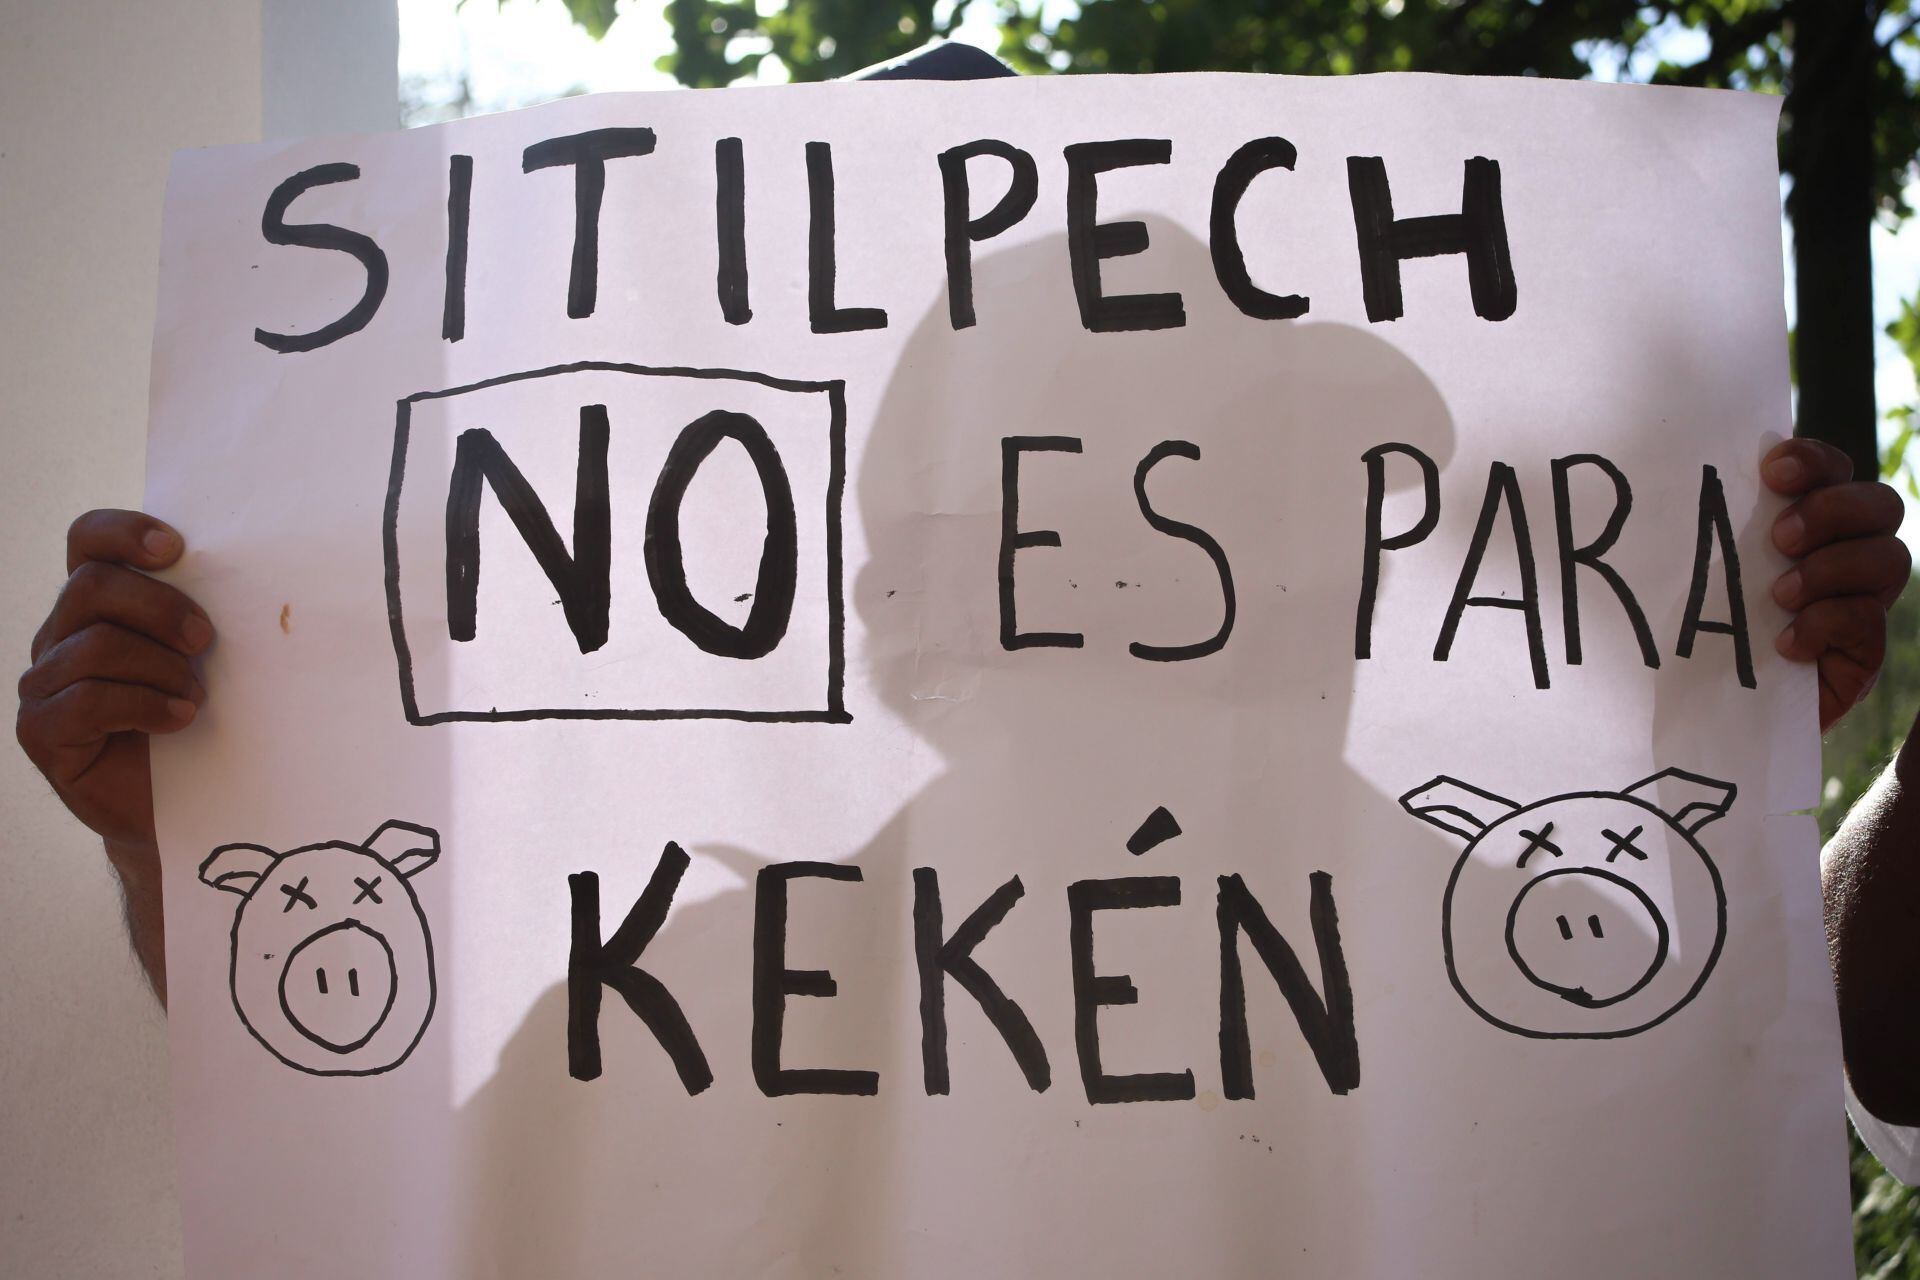 Protestas en Yucatán por granjas porcinas de Kekén: Detienen a 4 personas en Sitilpech